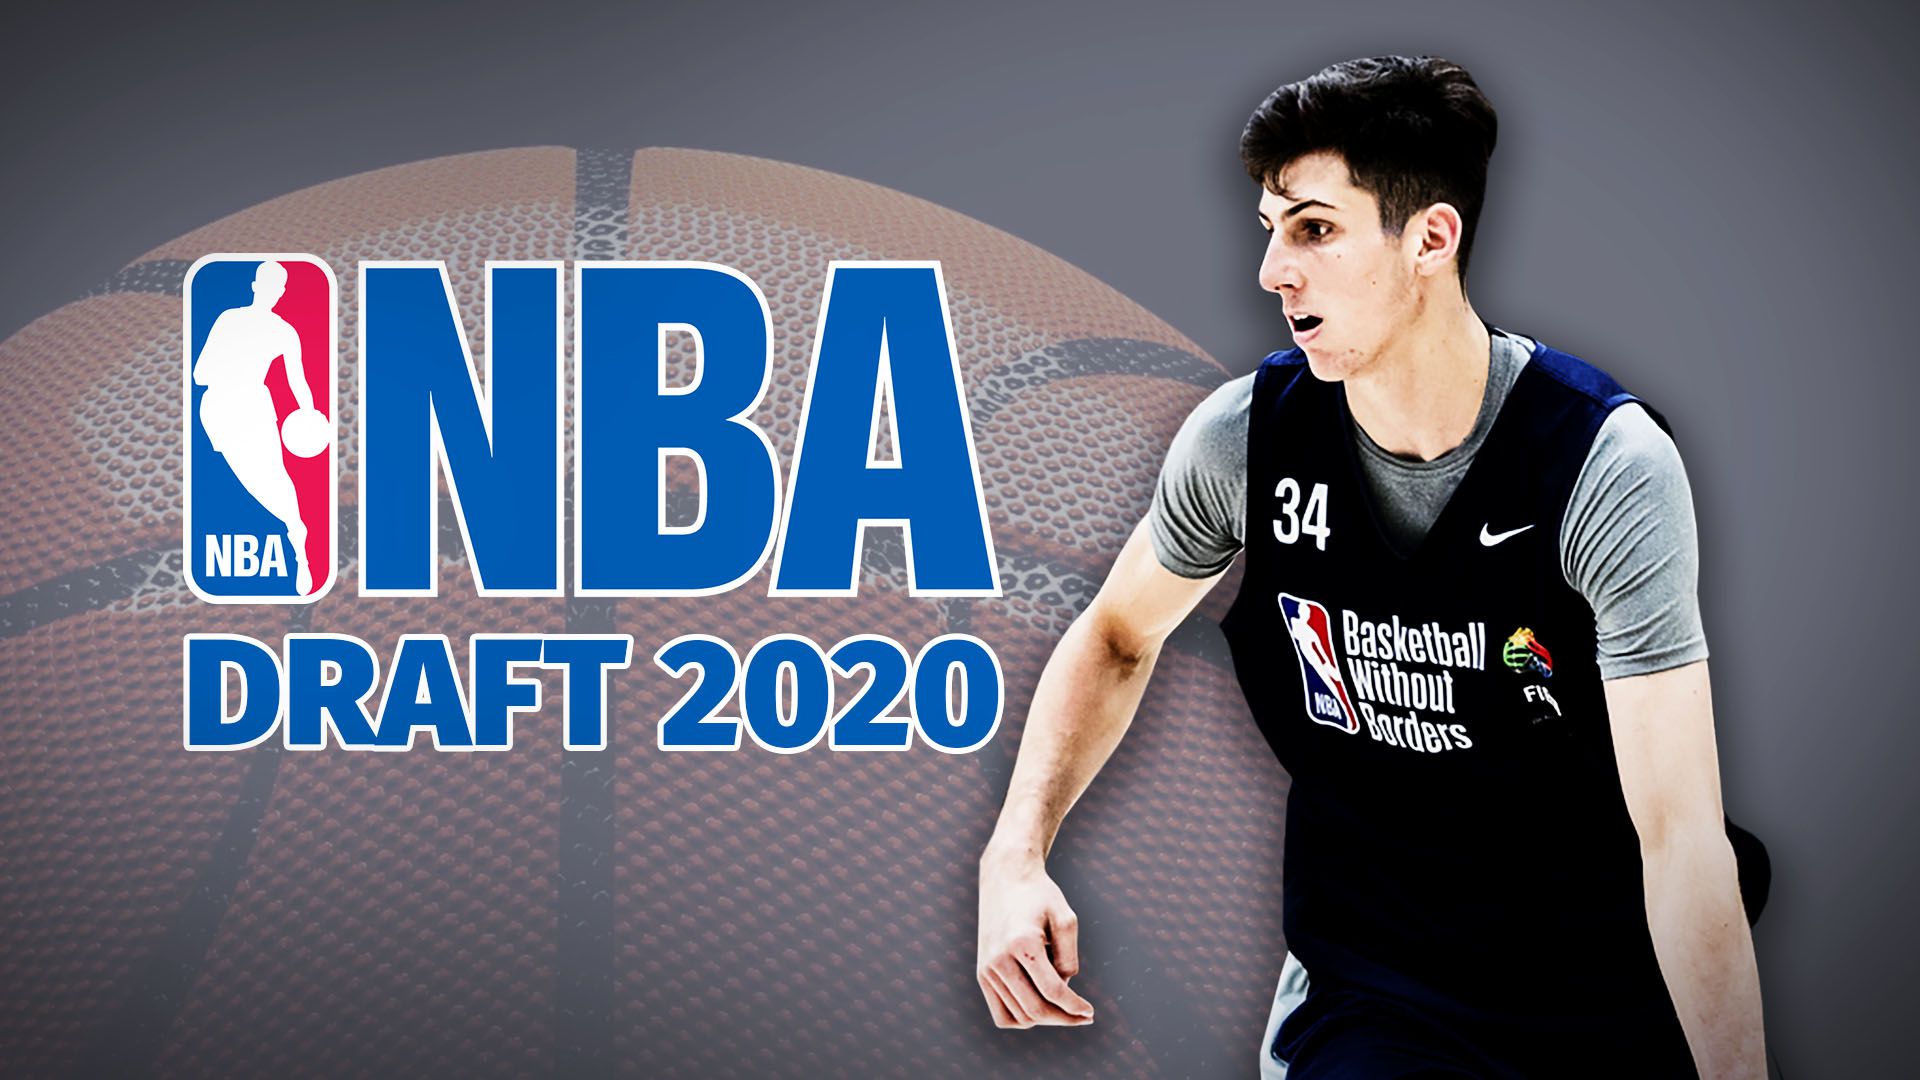 La NBA realiza un Draft especial que no tiene un candidato claro al número 1: quiénes pueden elegir al argentino Bolmaro y todo lo que hay que saber